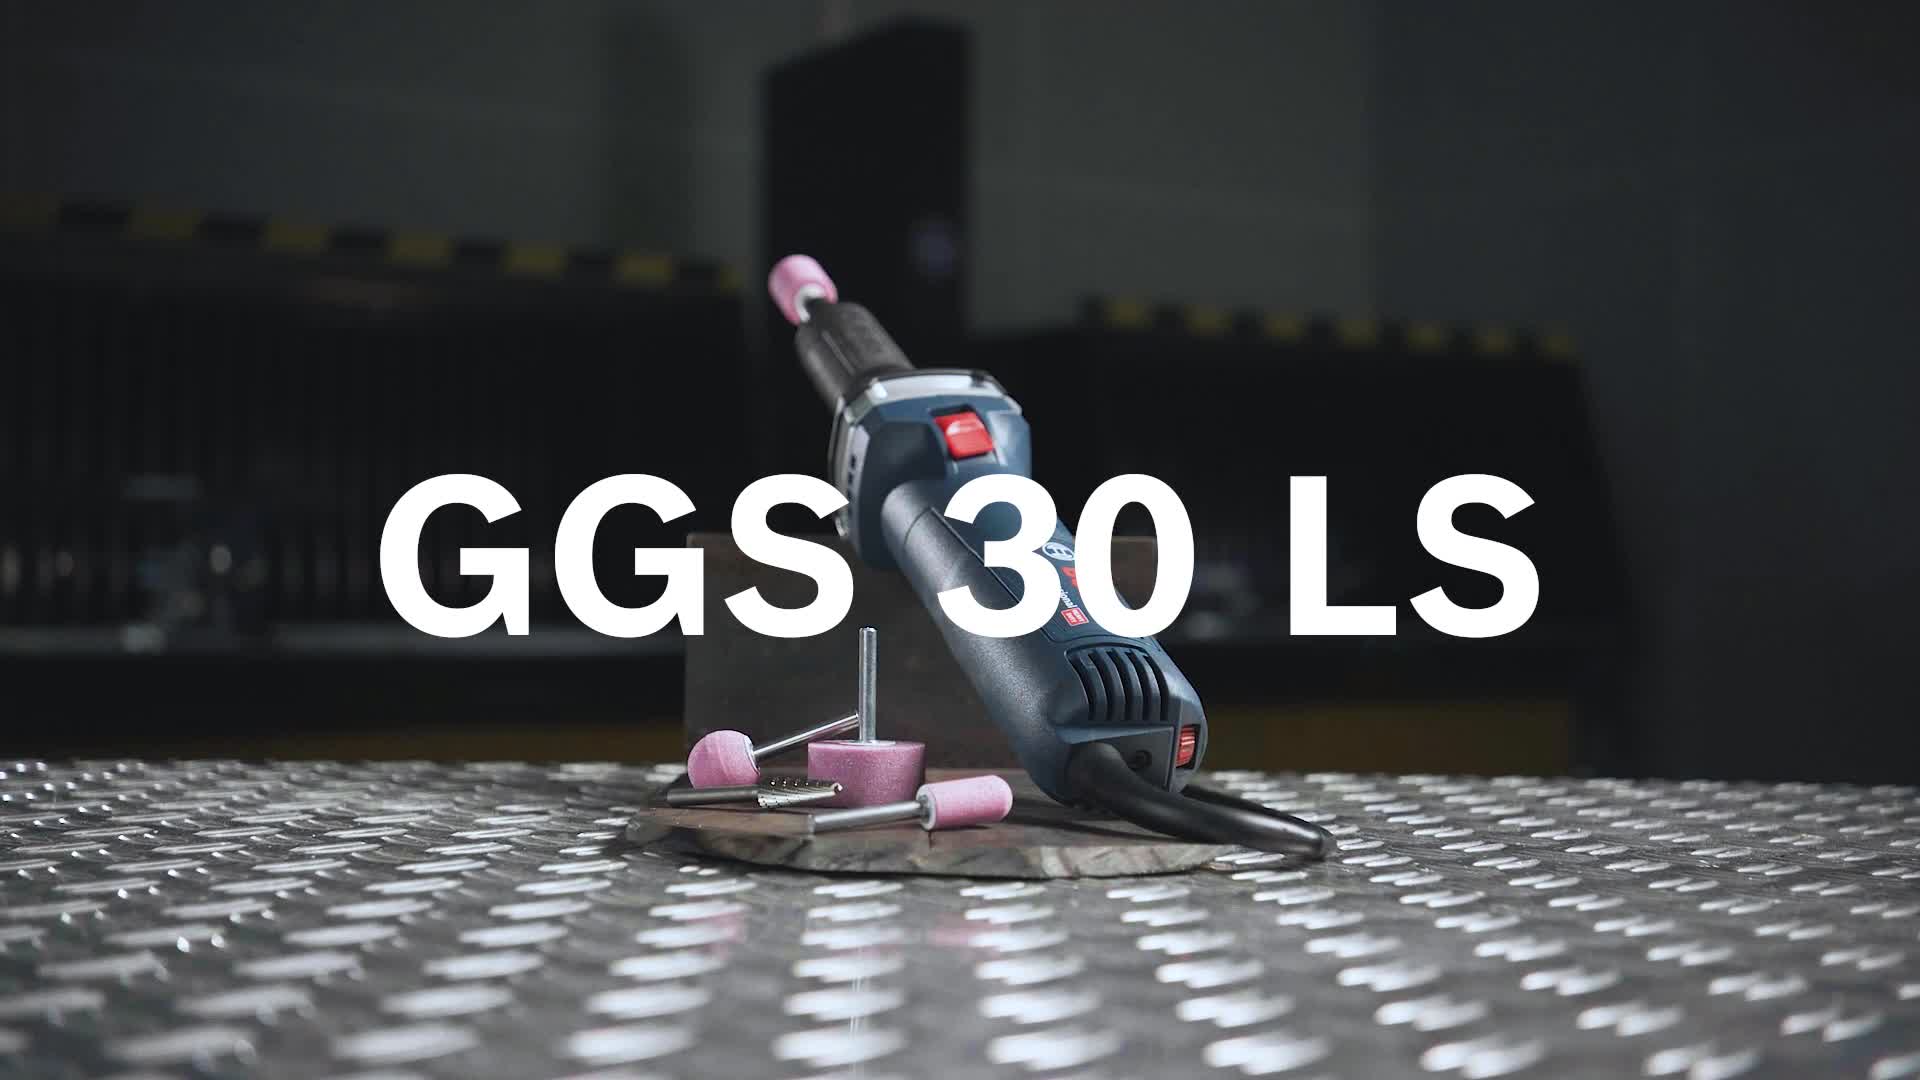 GGS 30 LS